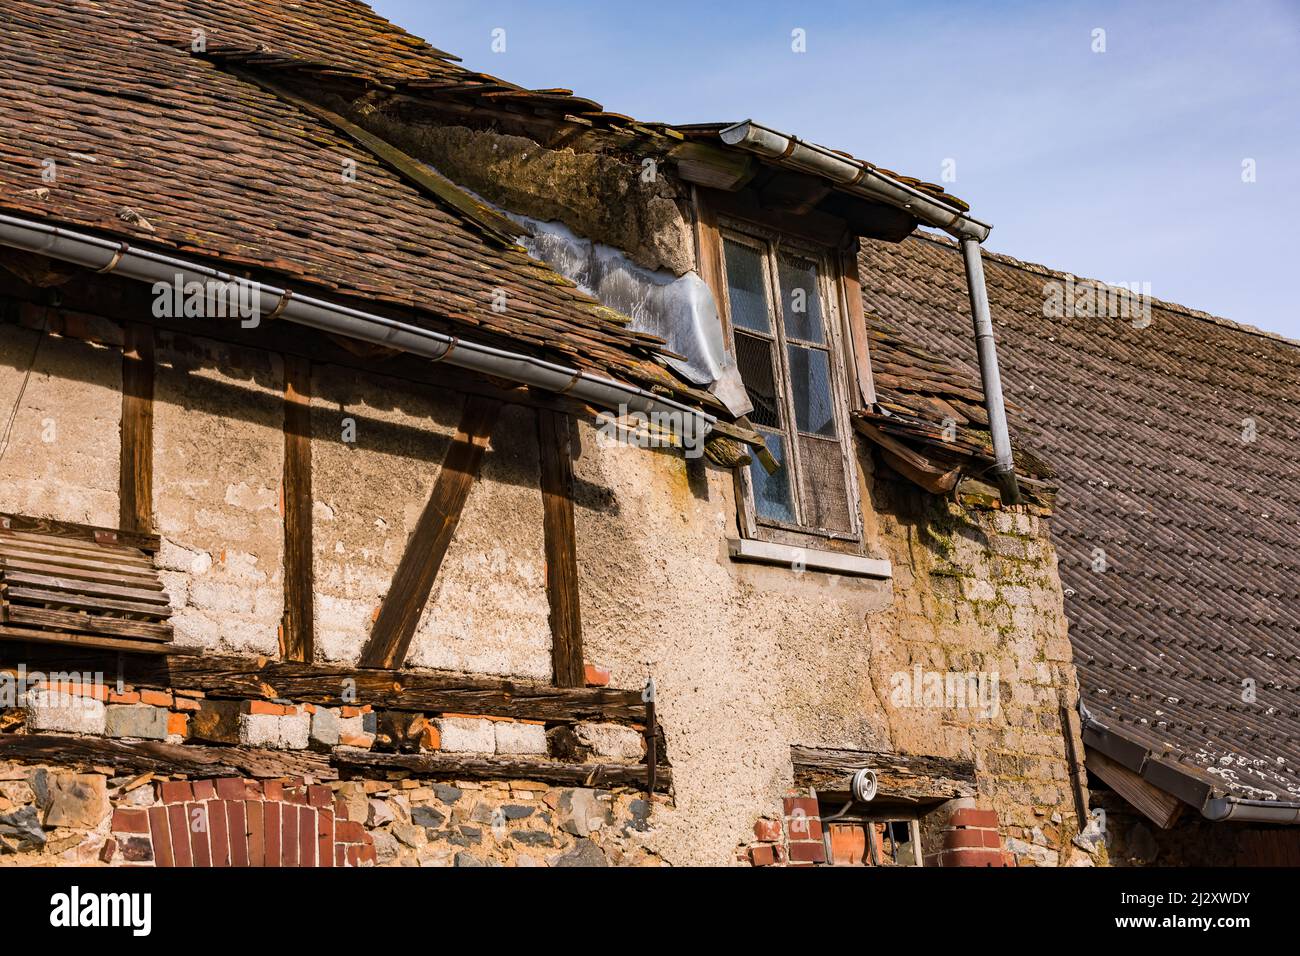 Dettaglio di una casa a graticcio che è vecchia e dilapidata Foto Stock